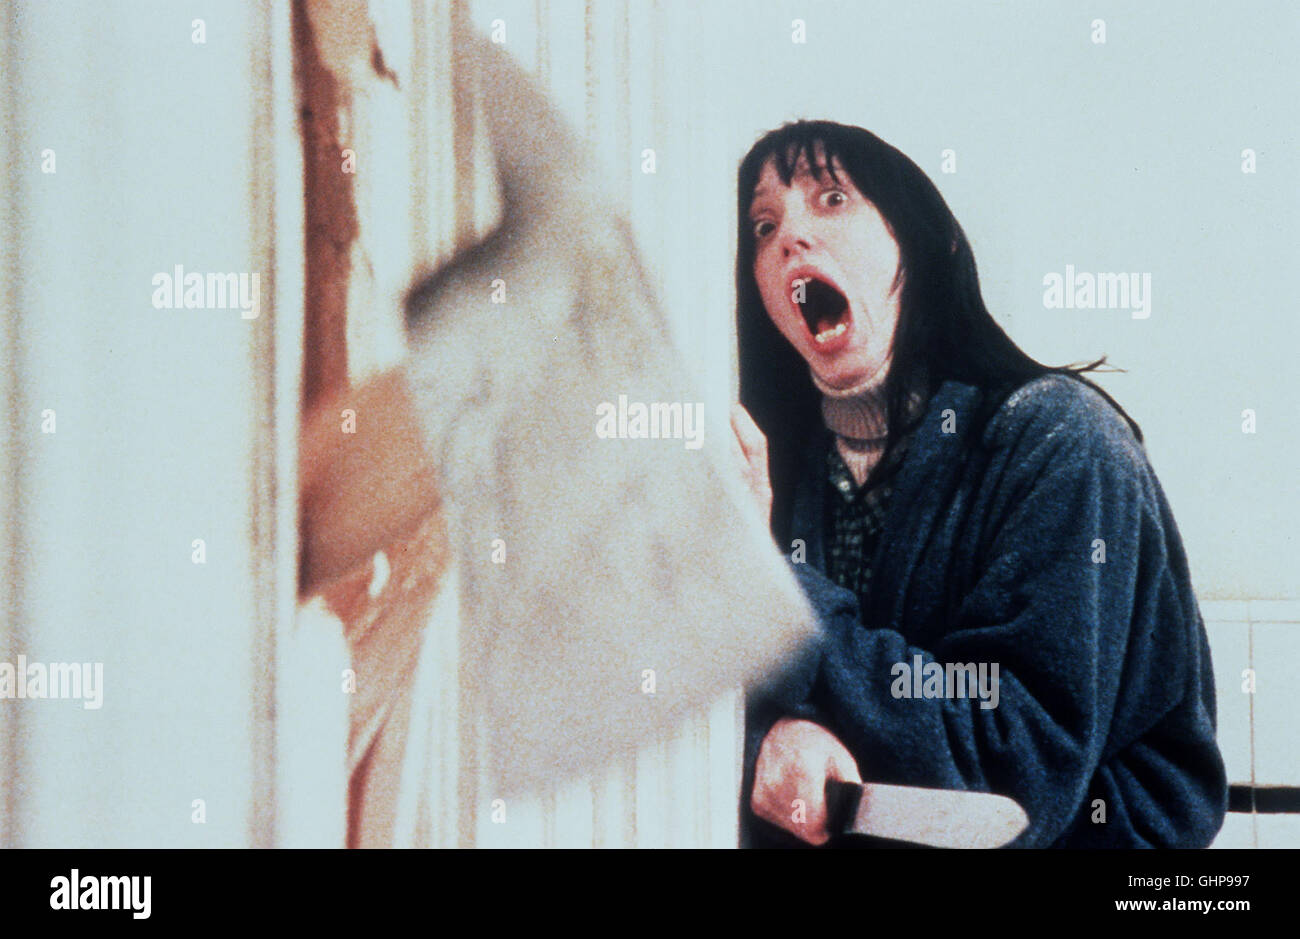 shining - Wendy (SHELLEY DUVALL) wird von ihrem wahnsinnig gewordenen Mann mit der Axt bedroht... Regie: Stanley Kubrick aka. The Shining: Nach einem Roman von Stephen King Stock Photo